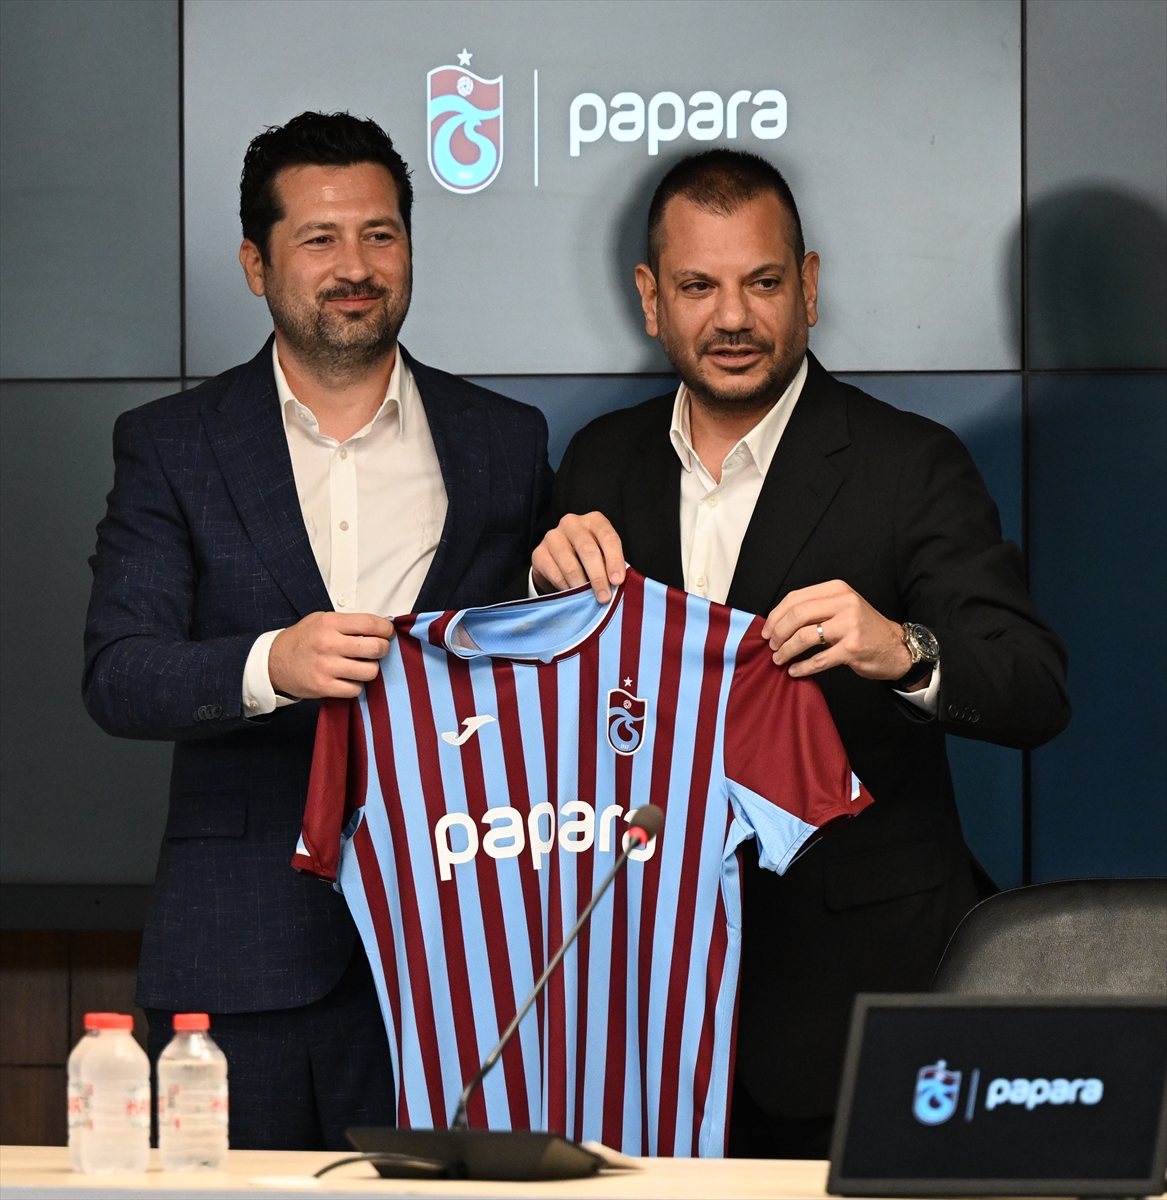 Trabzonspor'un yeni sezondaki “inatçı” formalarının göğüs sponsoru Papara oldu